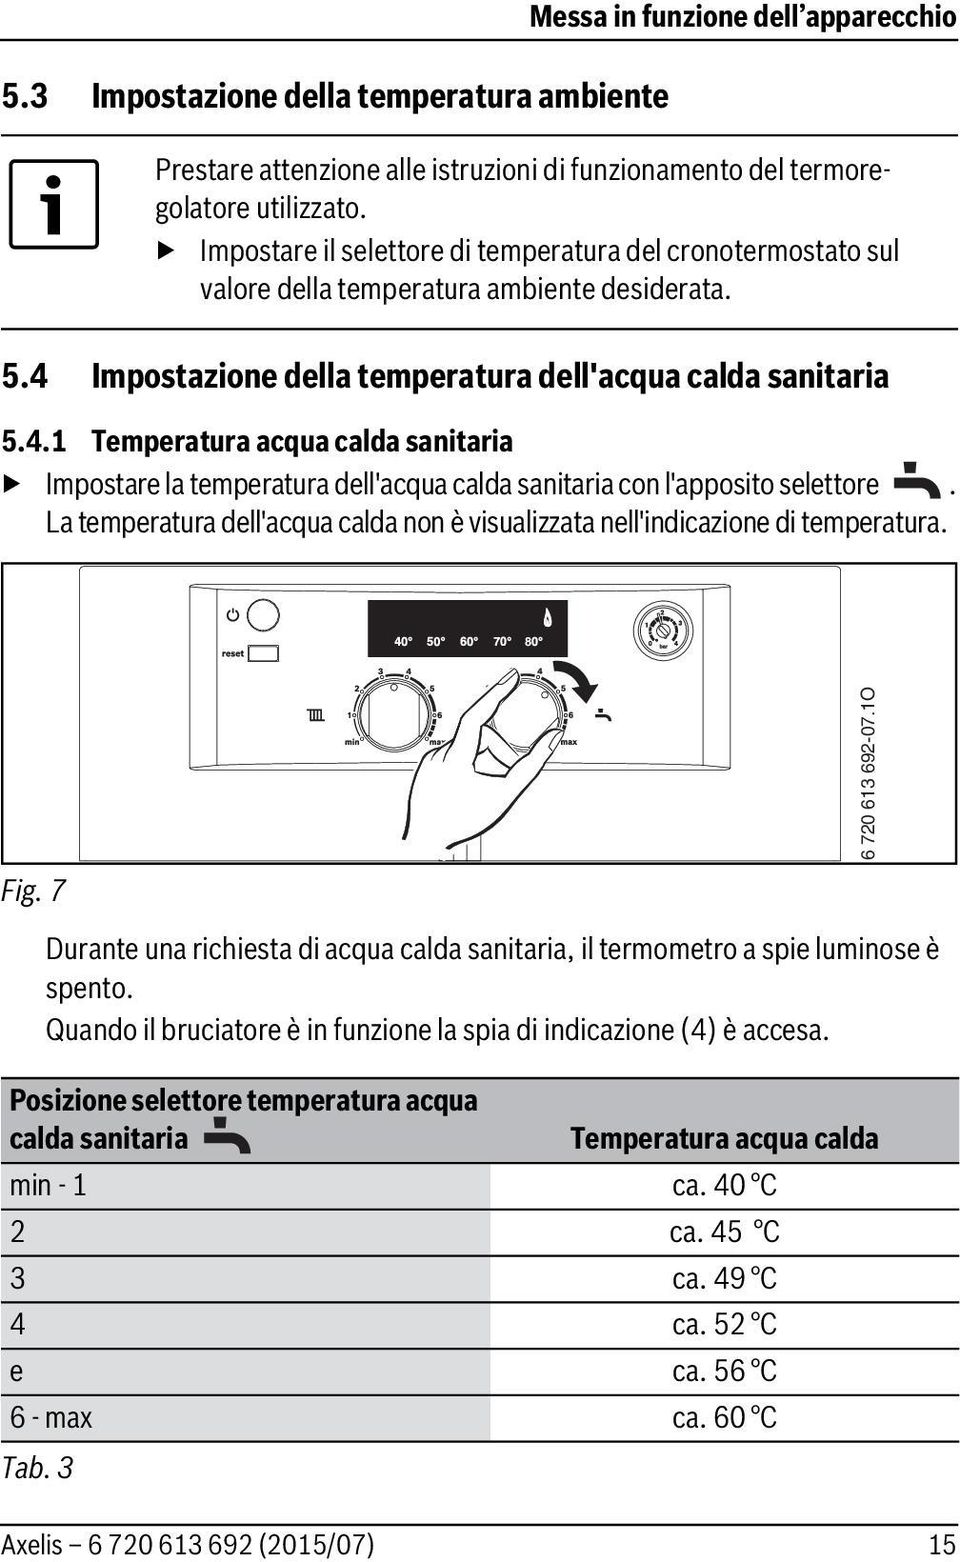 Impostazione della temperatura dell'acqua calda sanitaria 5.4.1 Temperatura acqua calda sanitaria Impostare la temperatura dell'acqua calda sanitaria con l'apposito selettore.